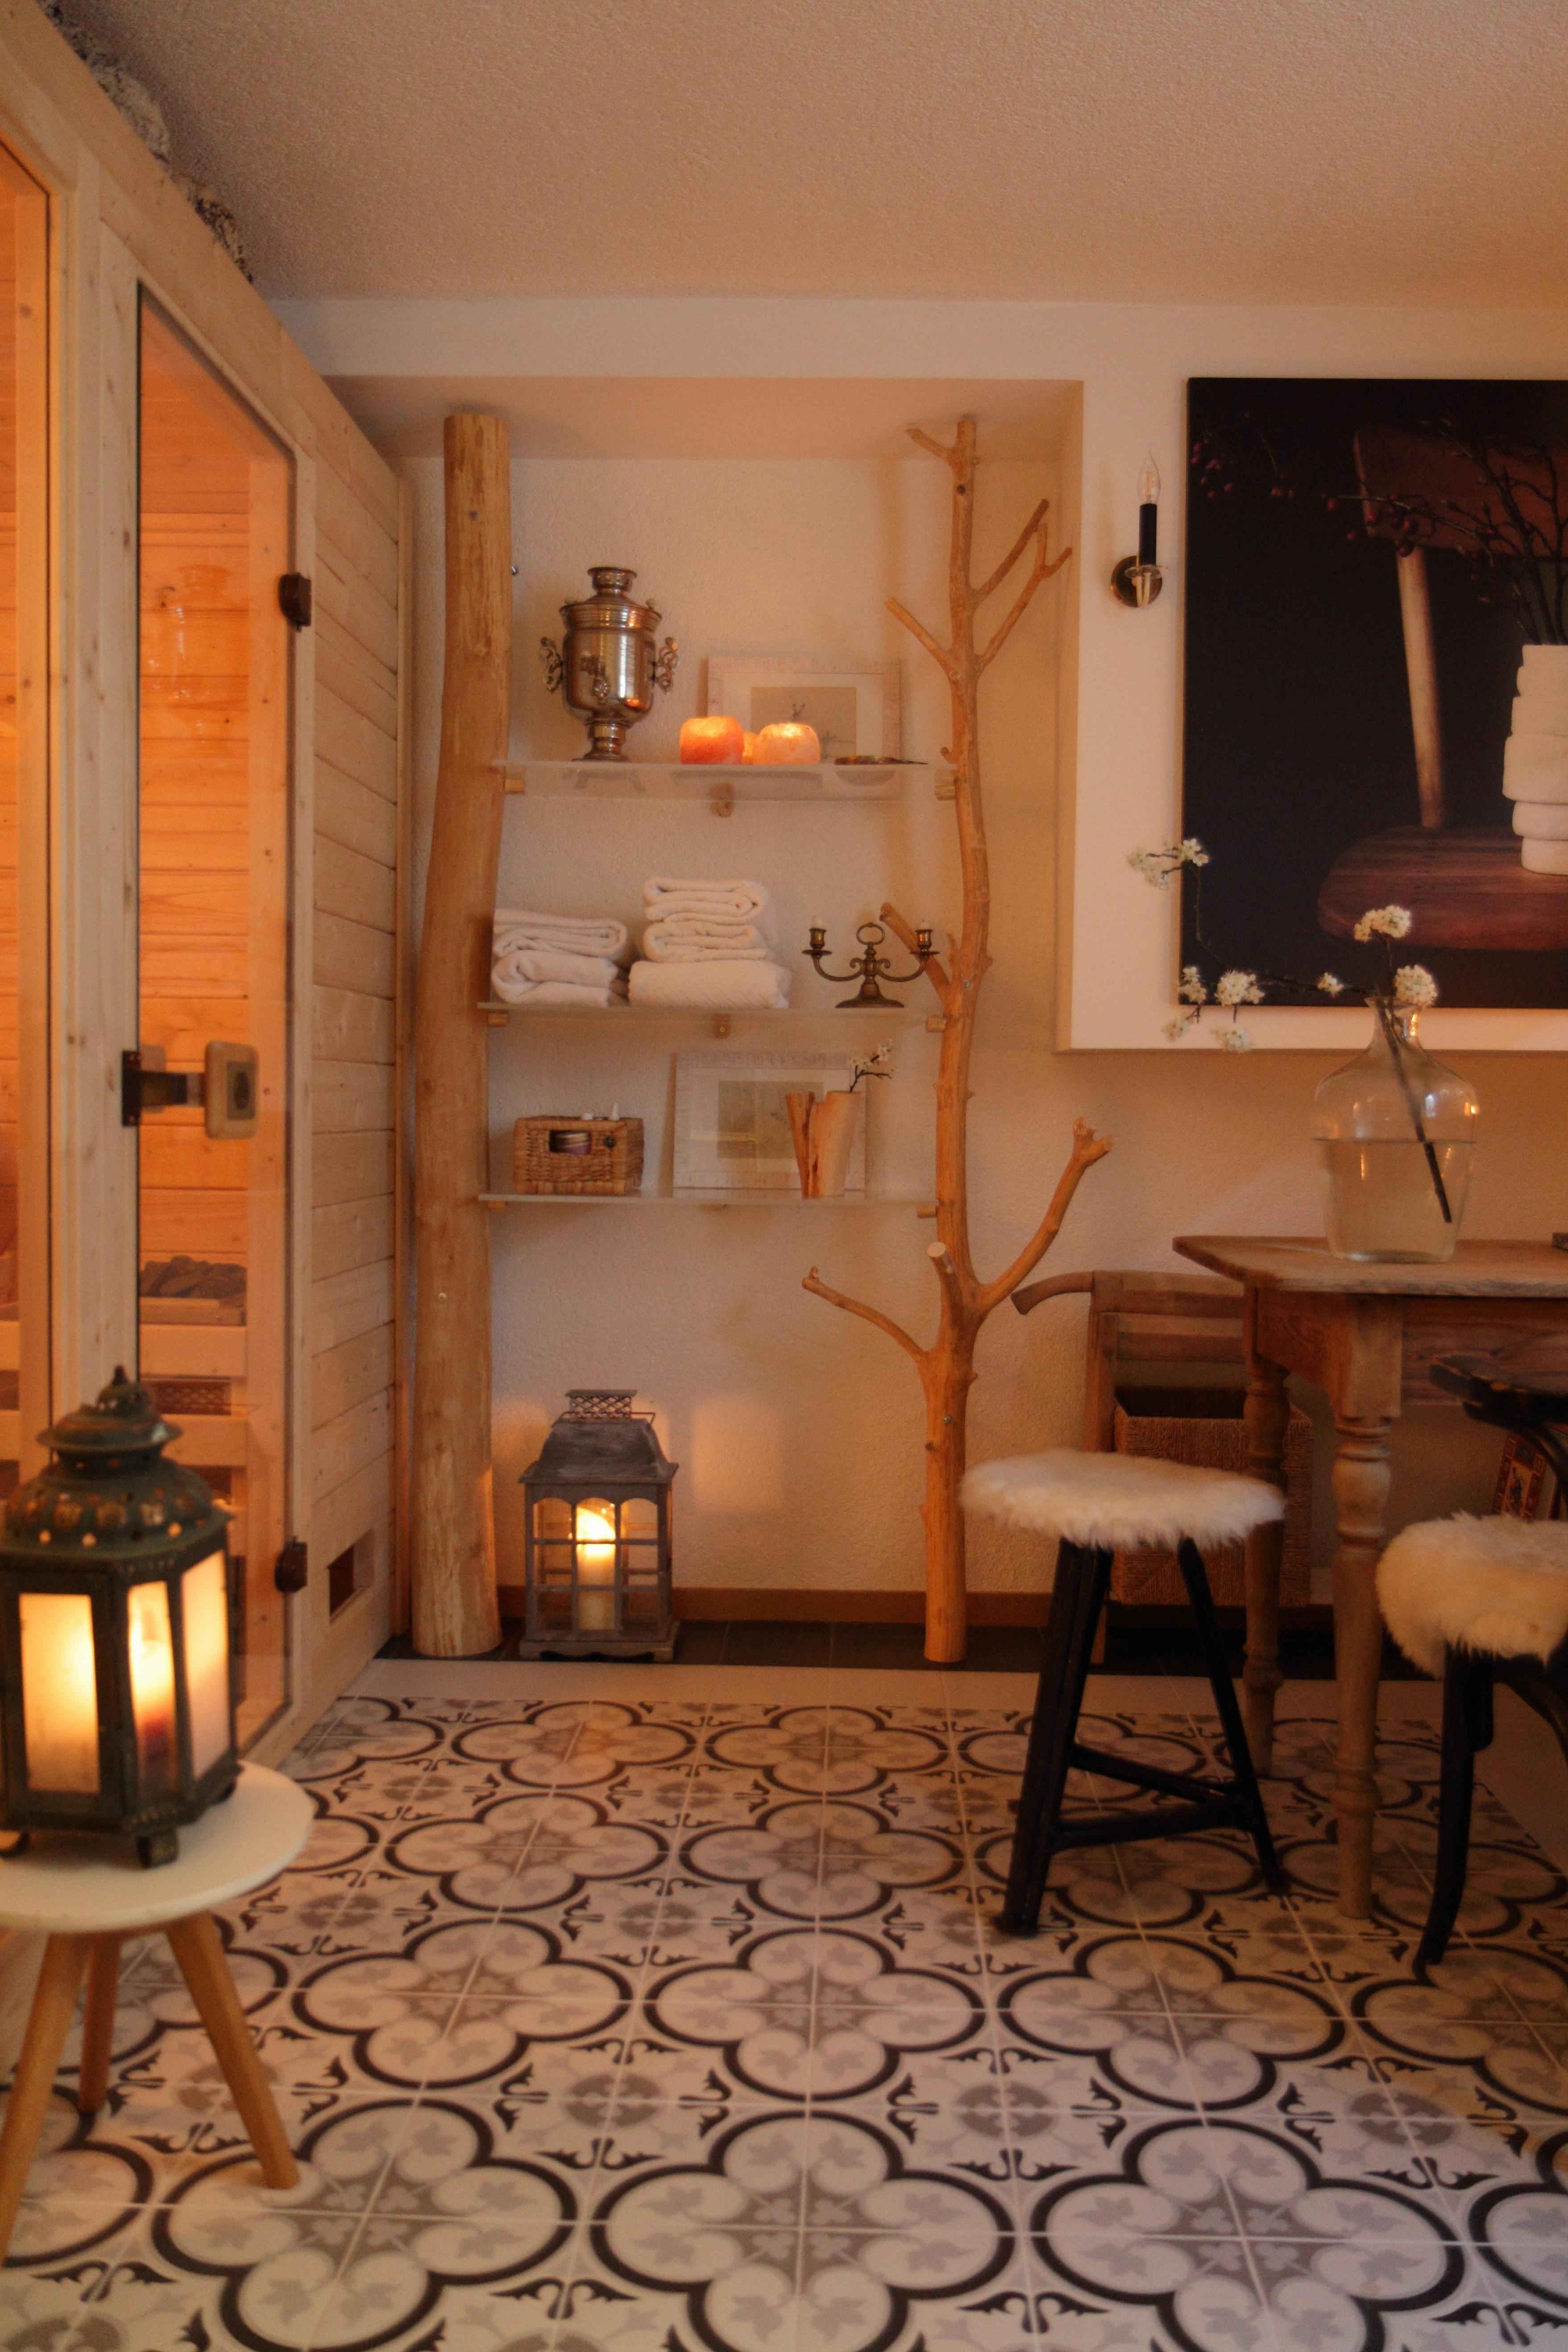 #beautychallenge #homespa
Ist definitiv unsere kleine Sauna, die wir im Februar fertiggestellt haben.😊